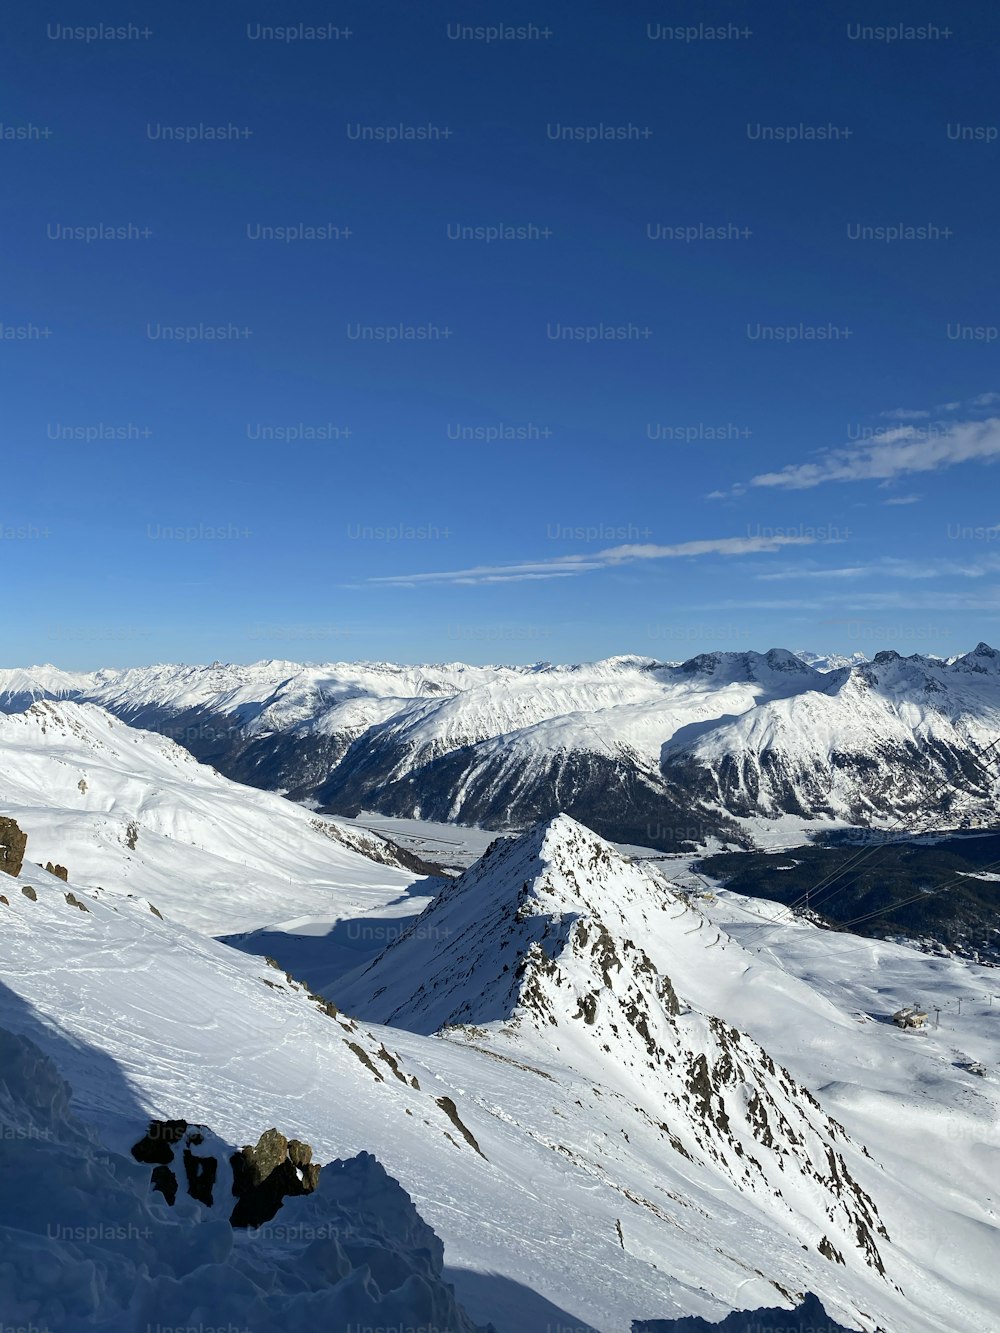 una persona in piedi sulla cima di una montagna coperta di neve